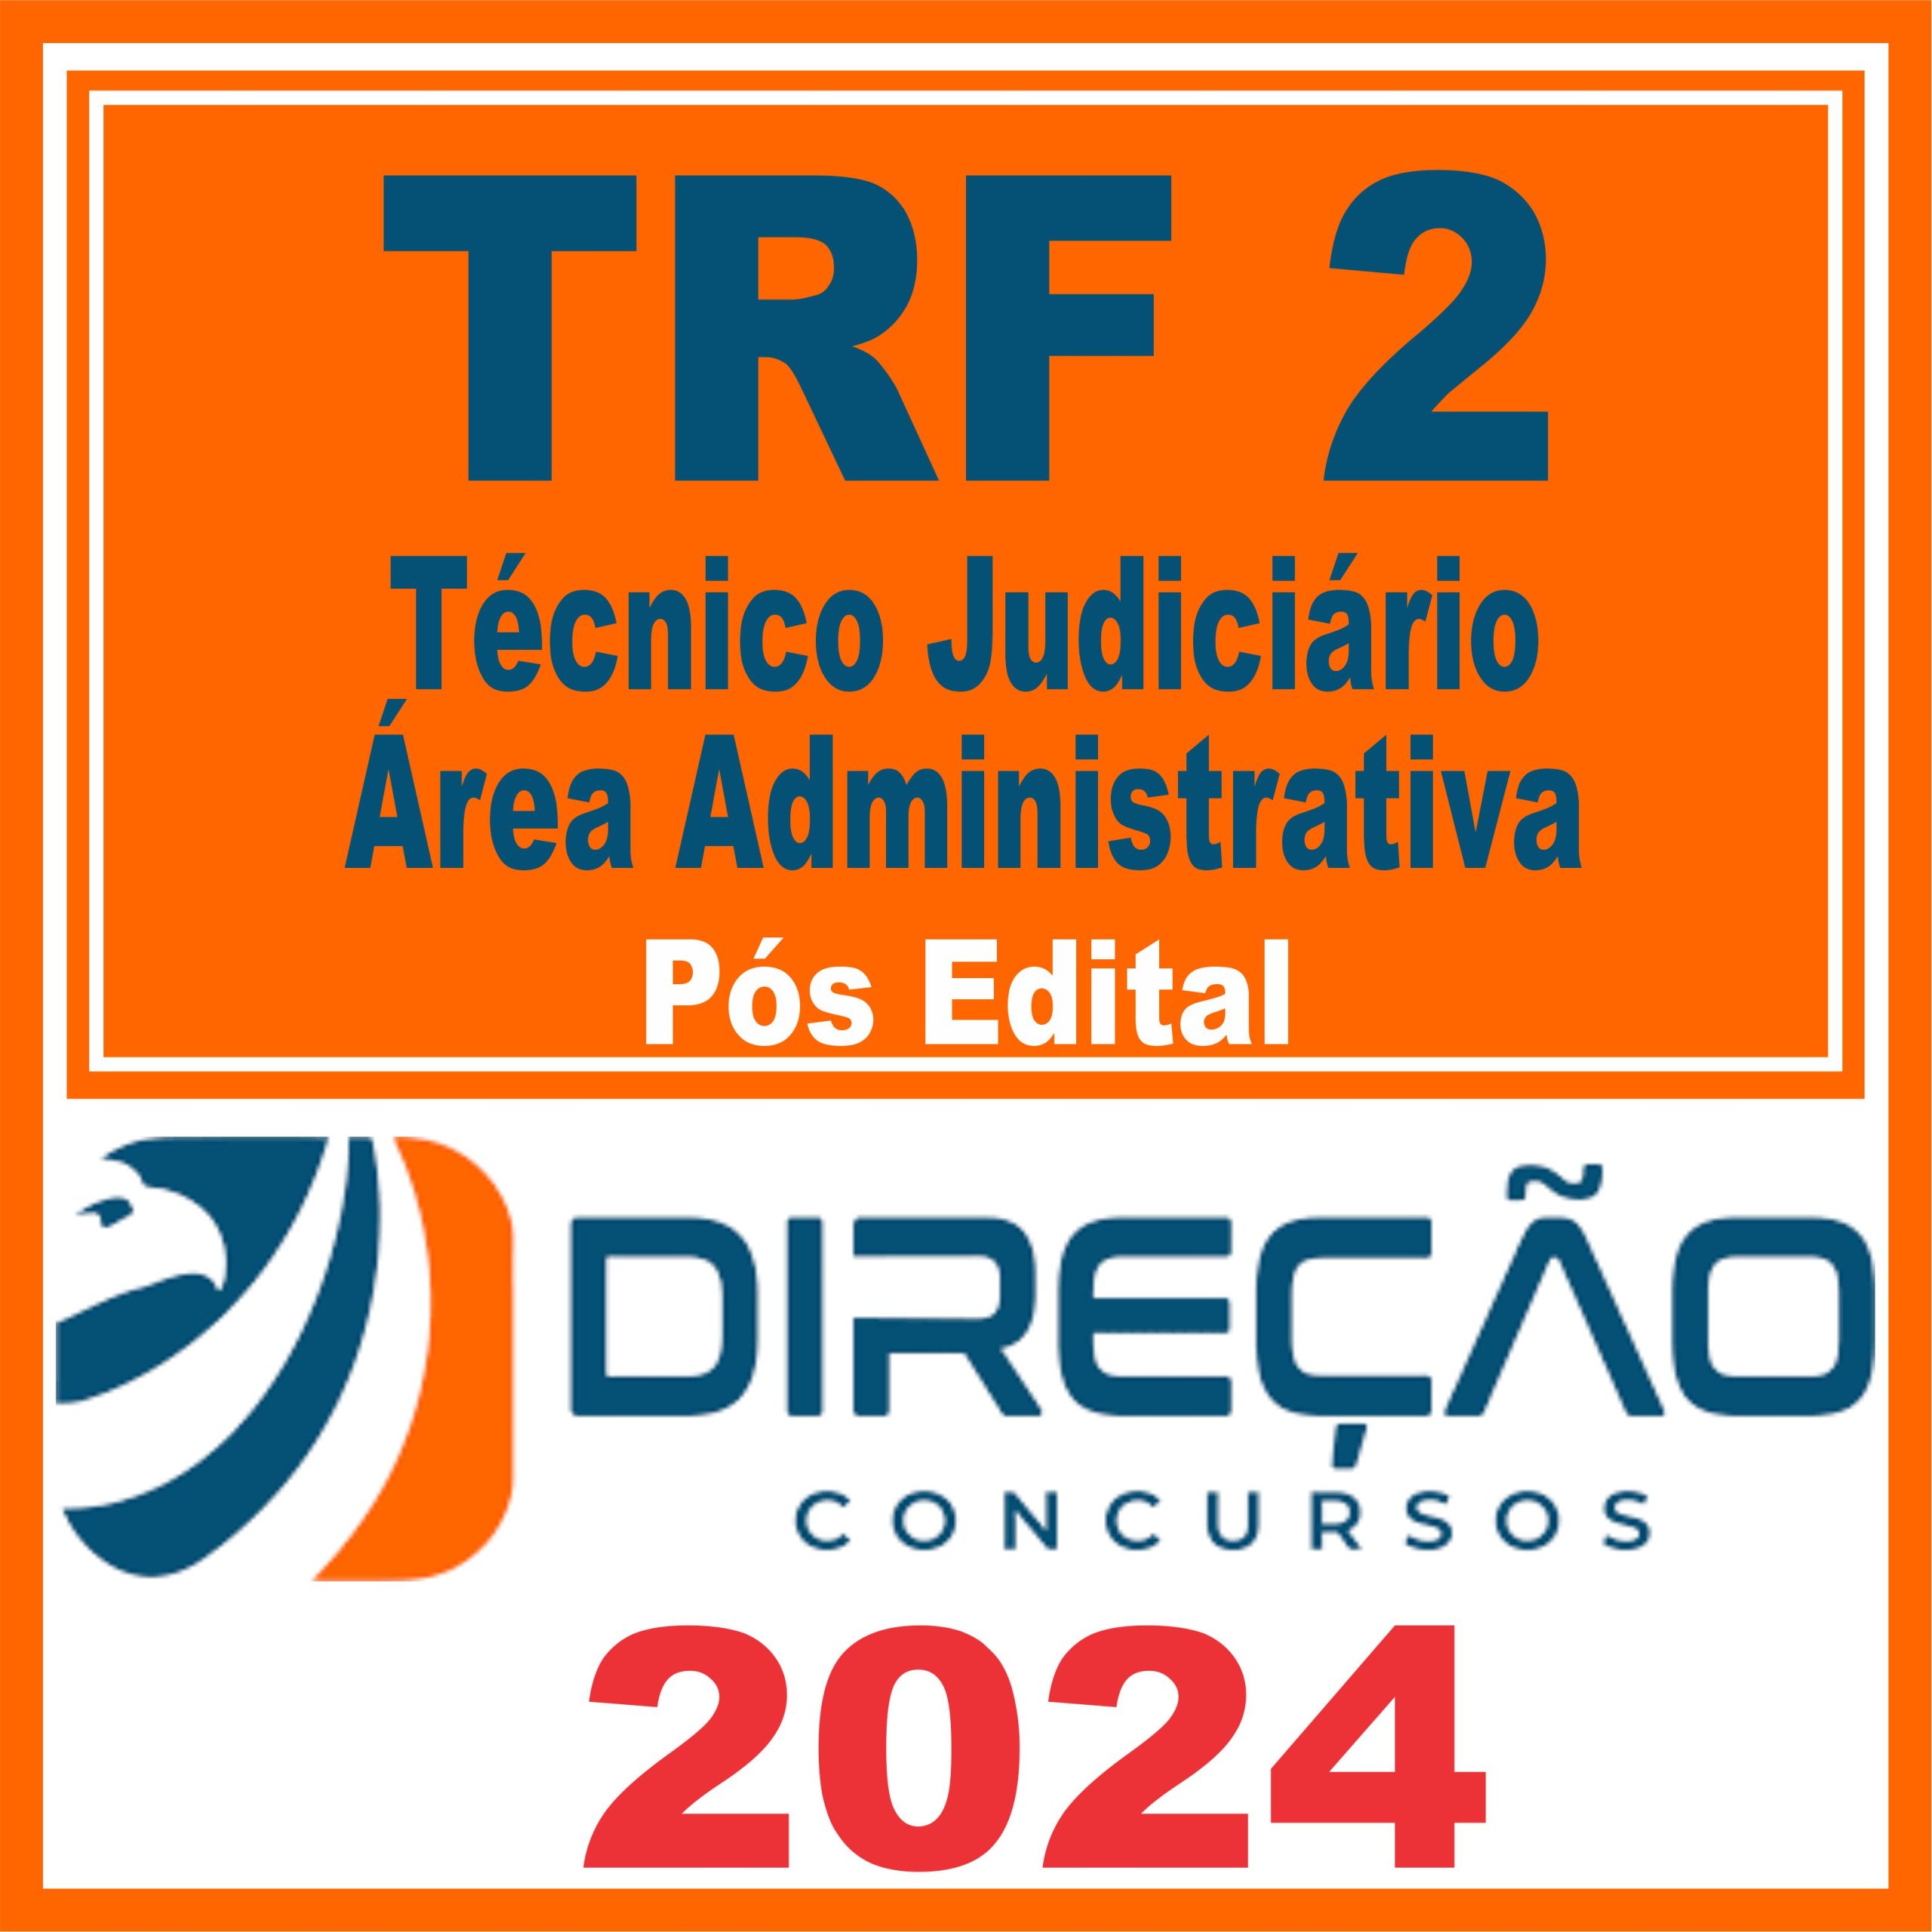 trf-2-tjaa